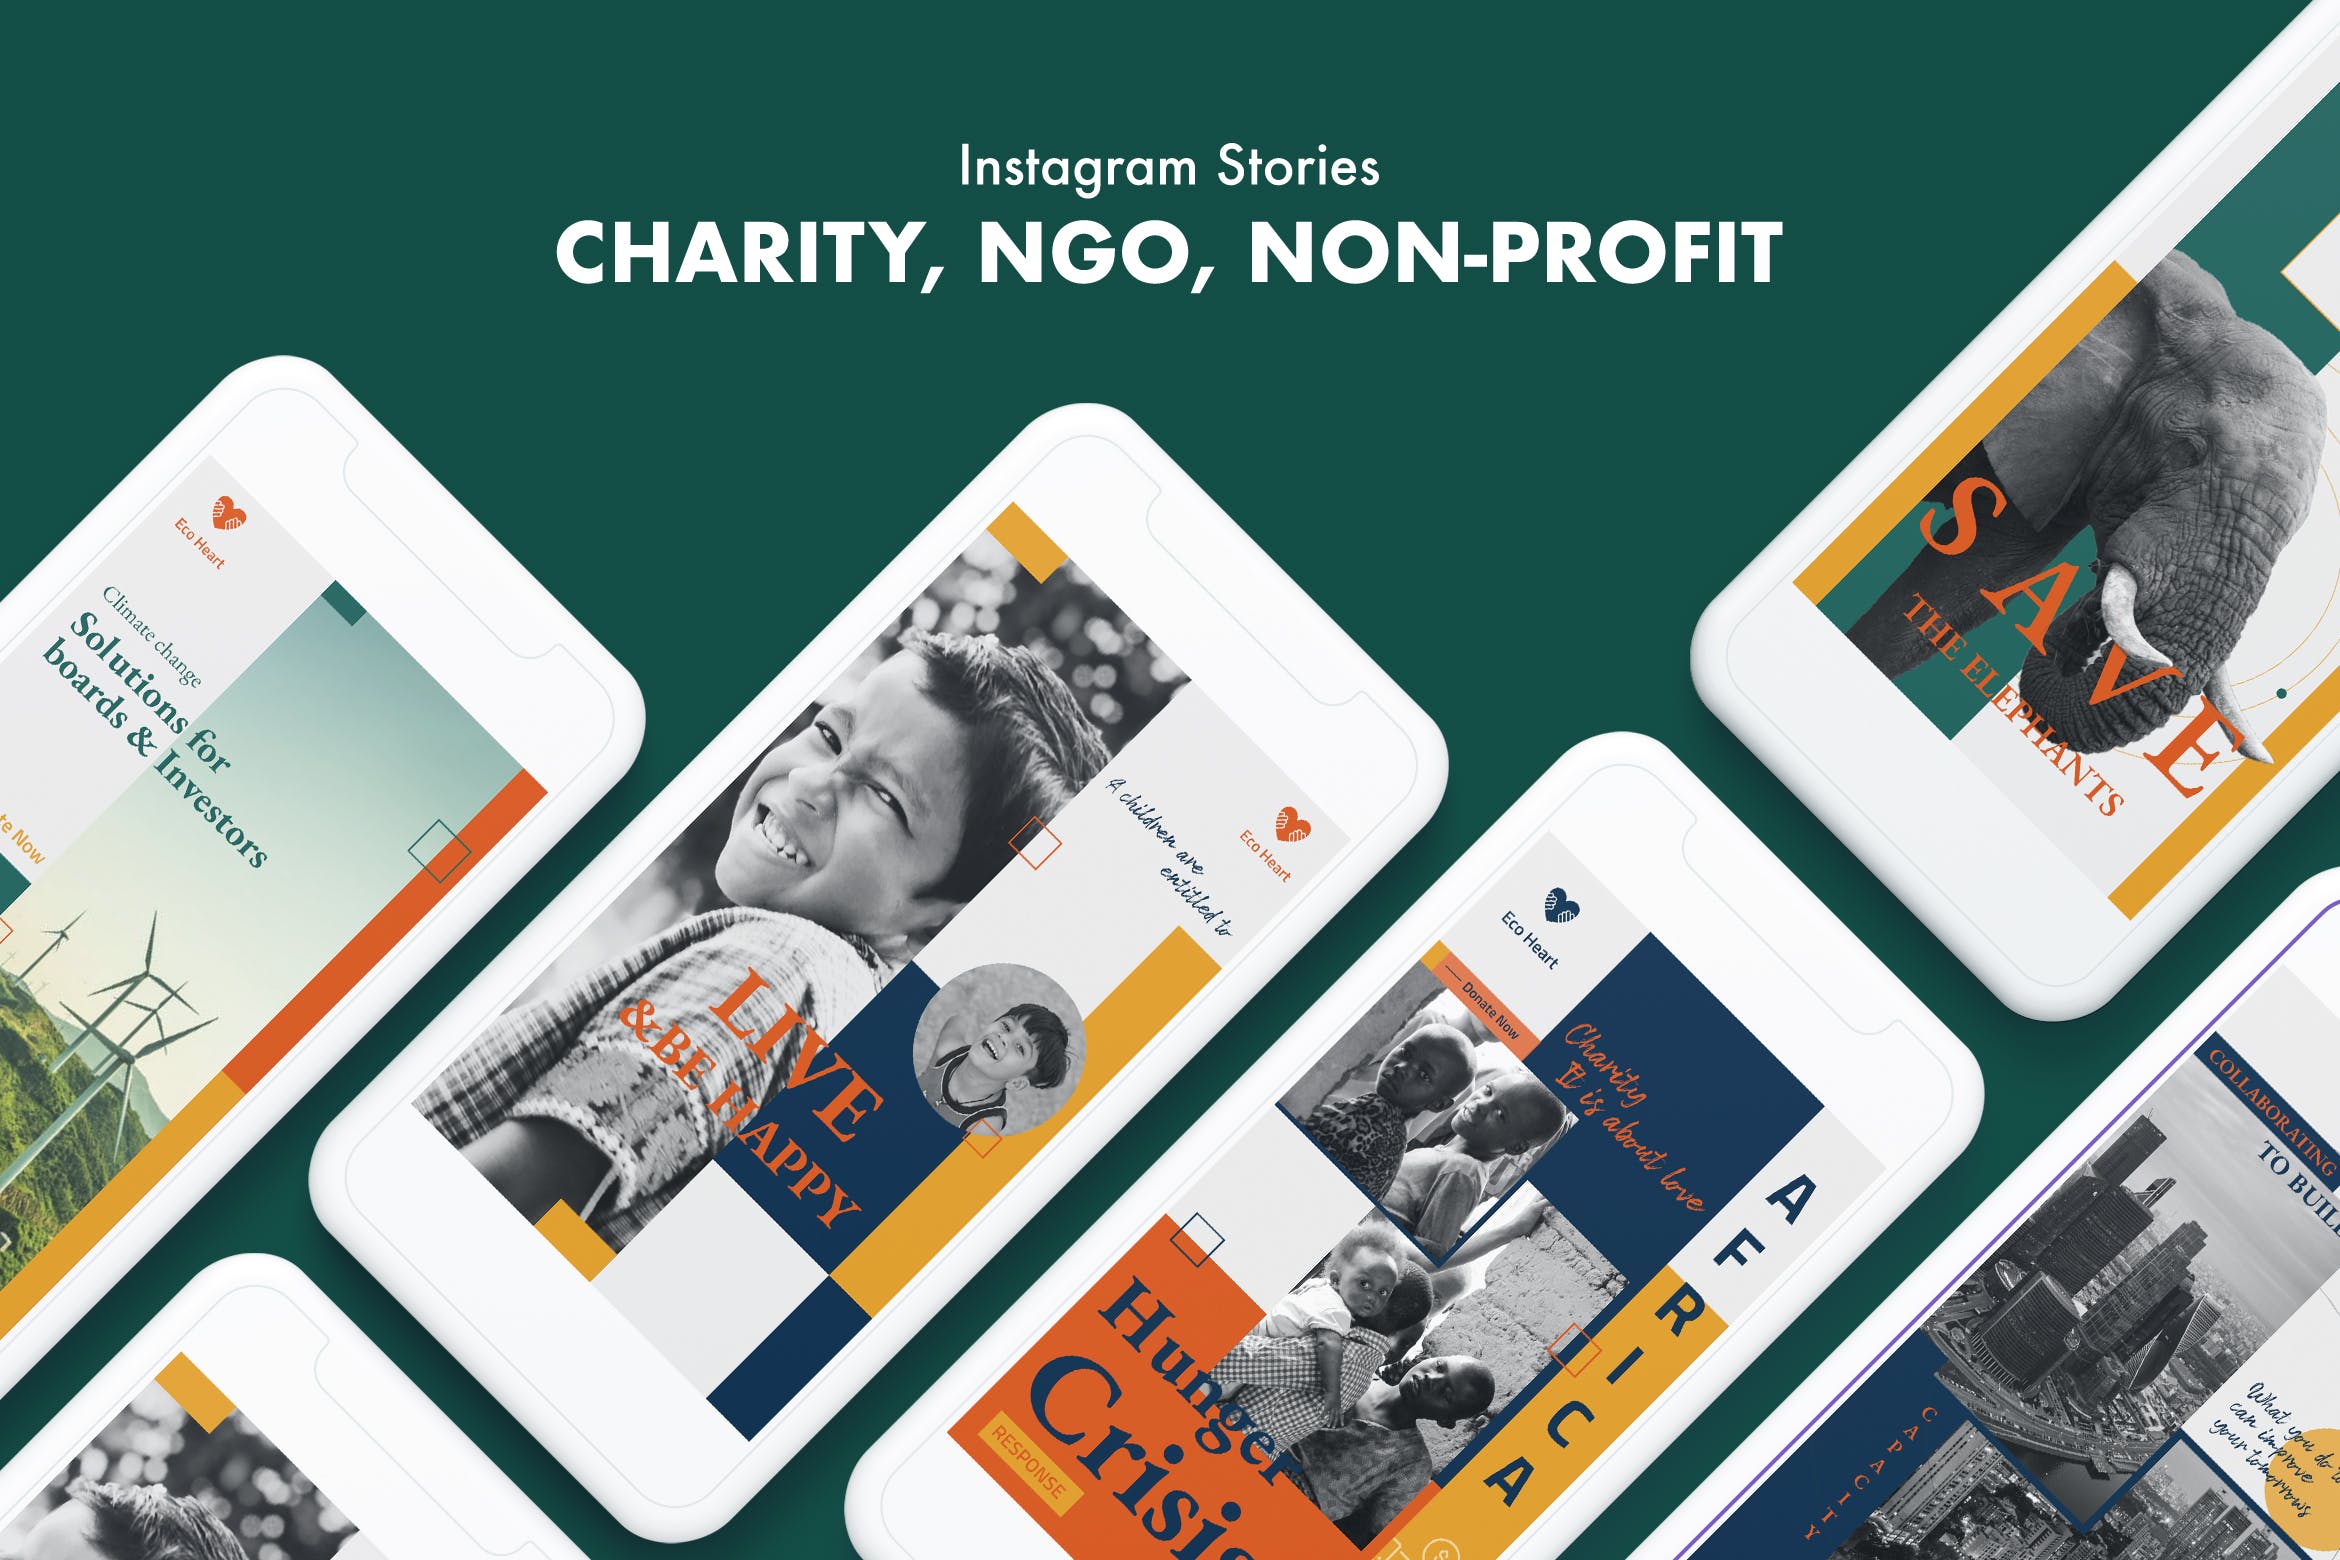 非盈利慈善组织Instagram活动宣传故事贴图社交媒体模板 Charity, NGO, Non-Profit Instagram Stories设计素材模板